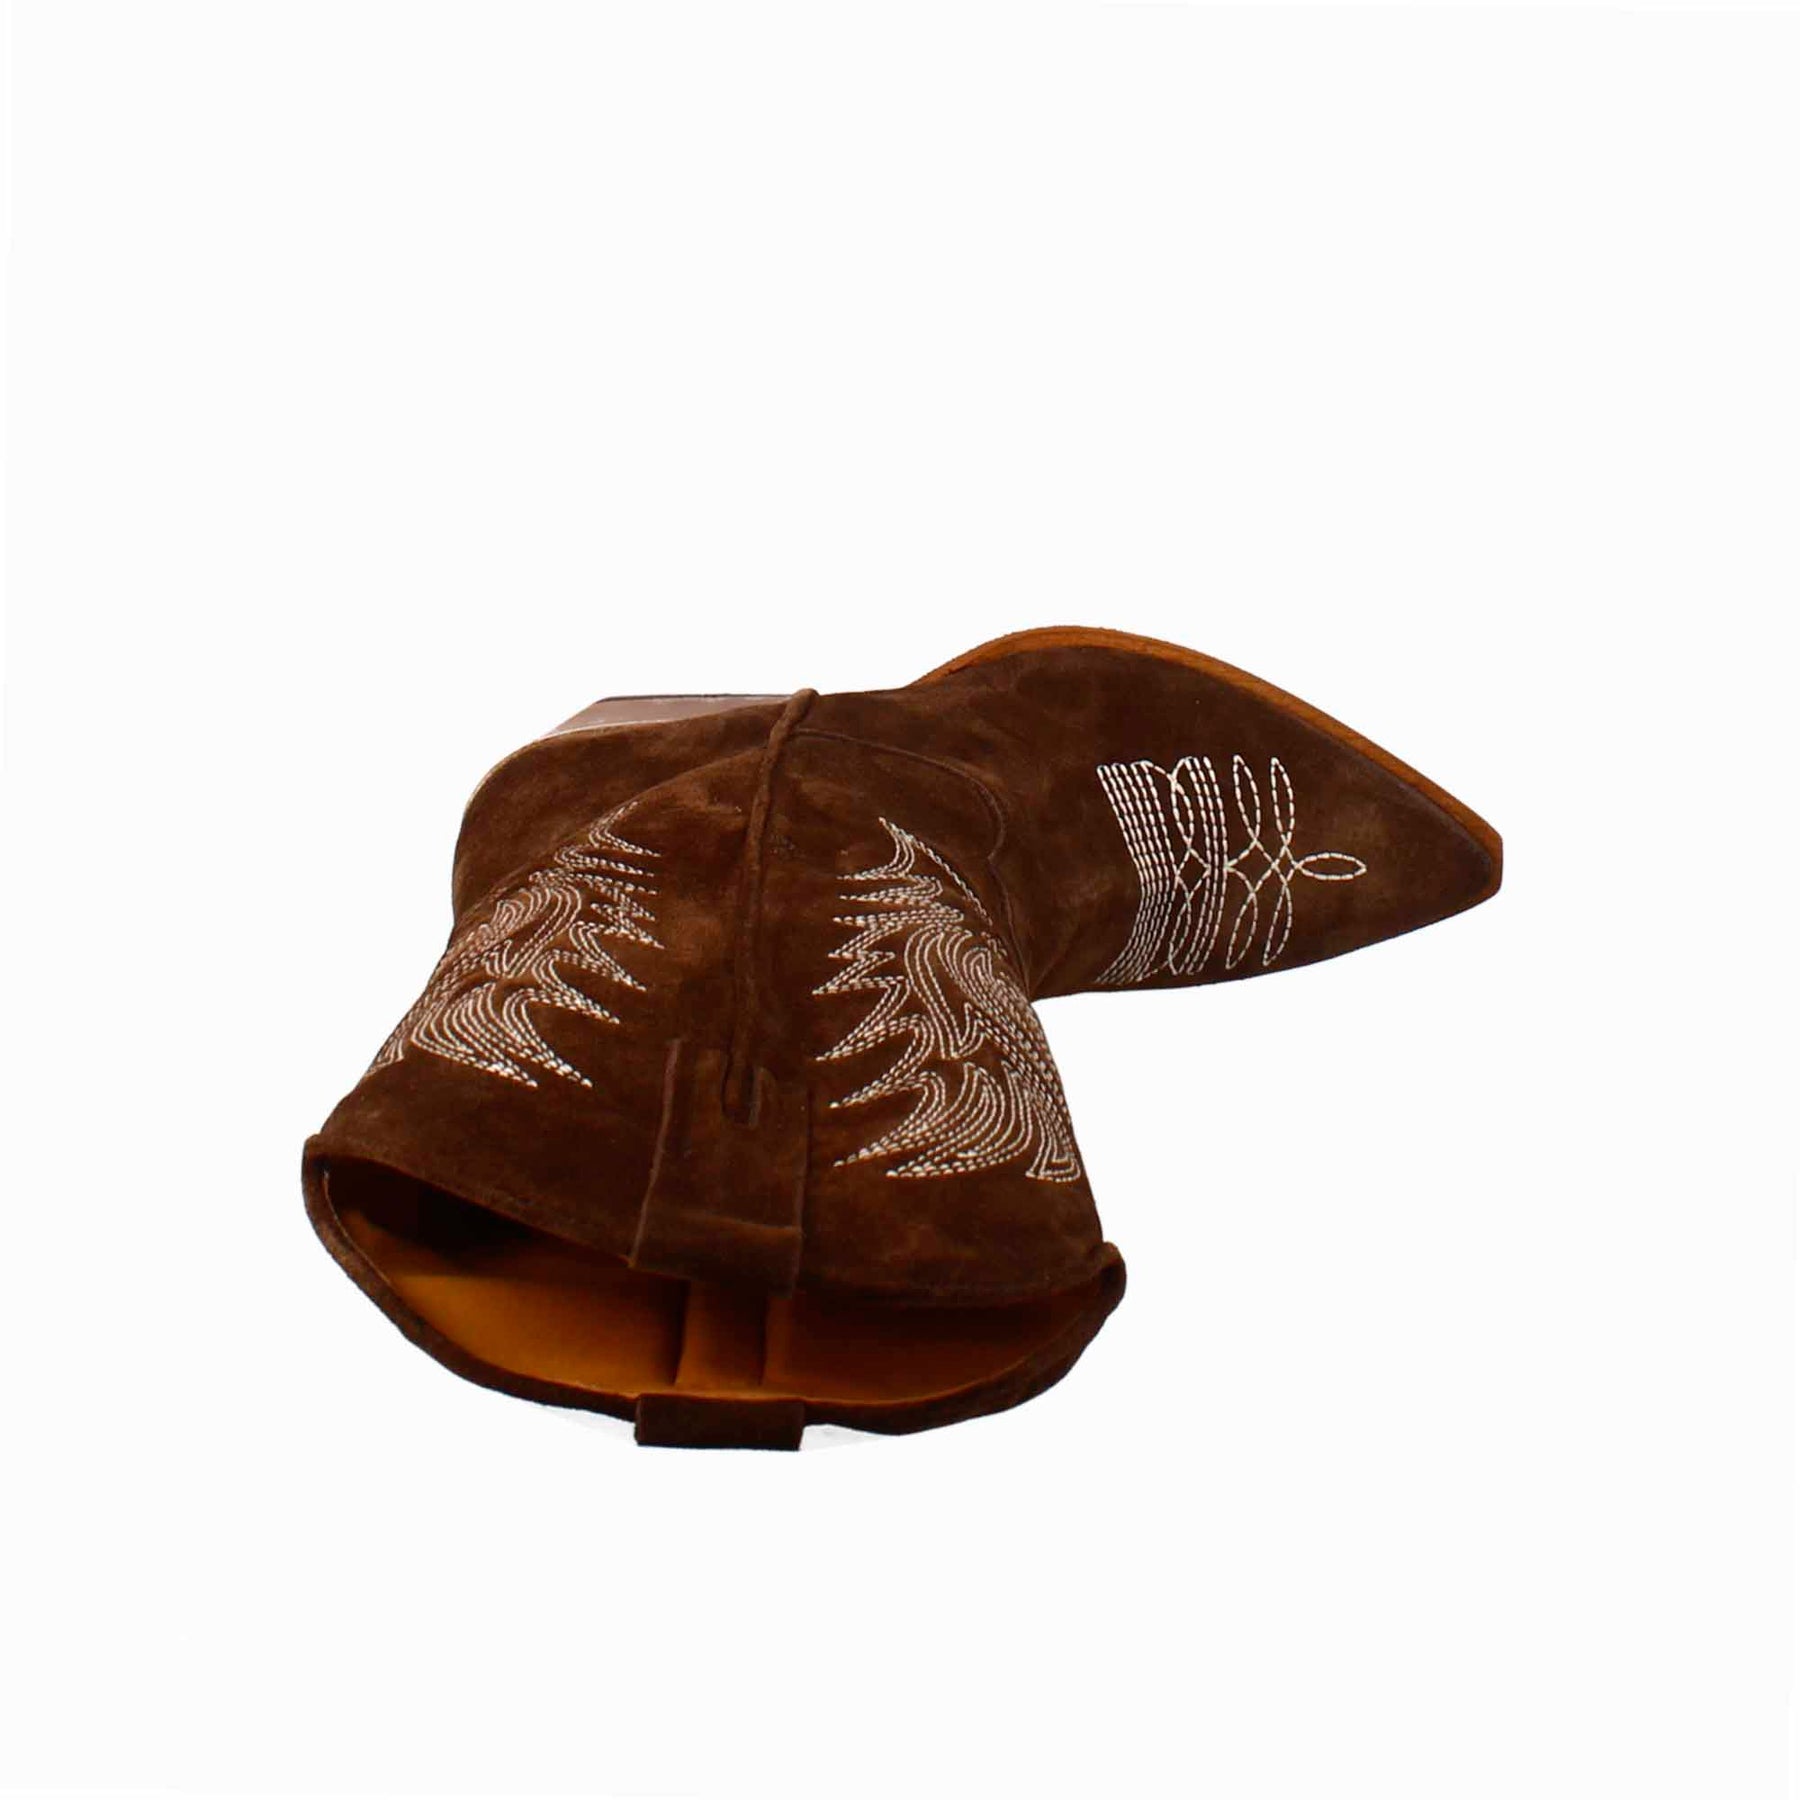 Bottine texane pour femme en daim marron chocolat avec broderie